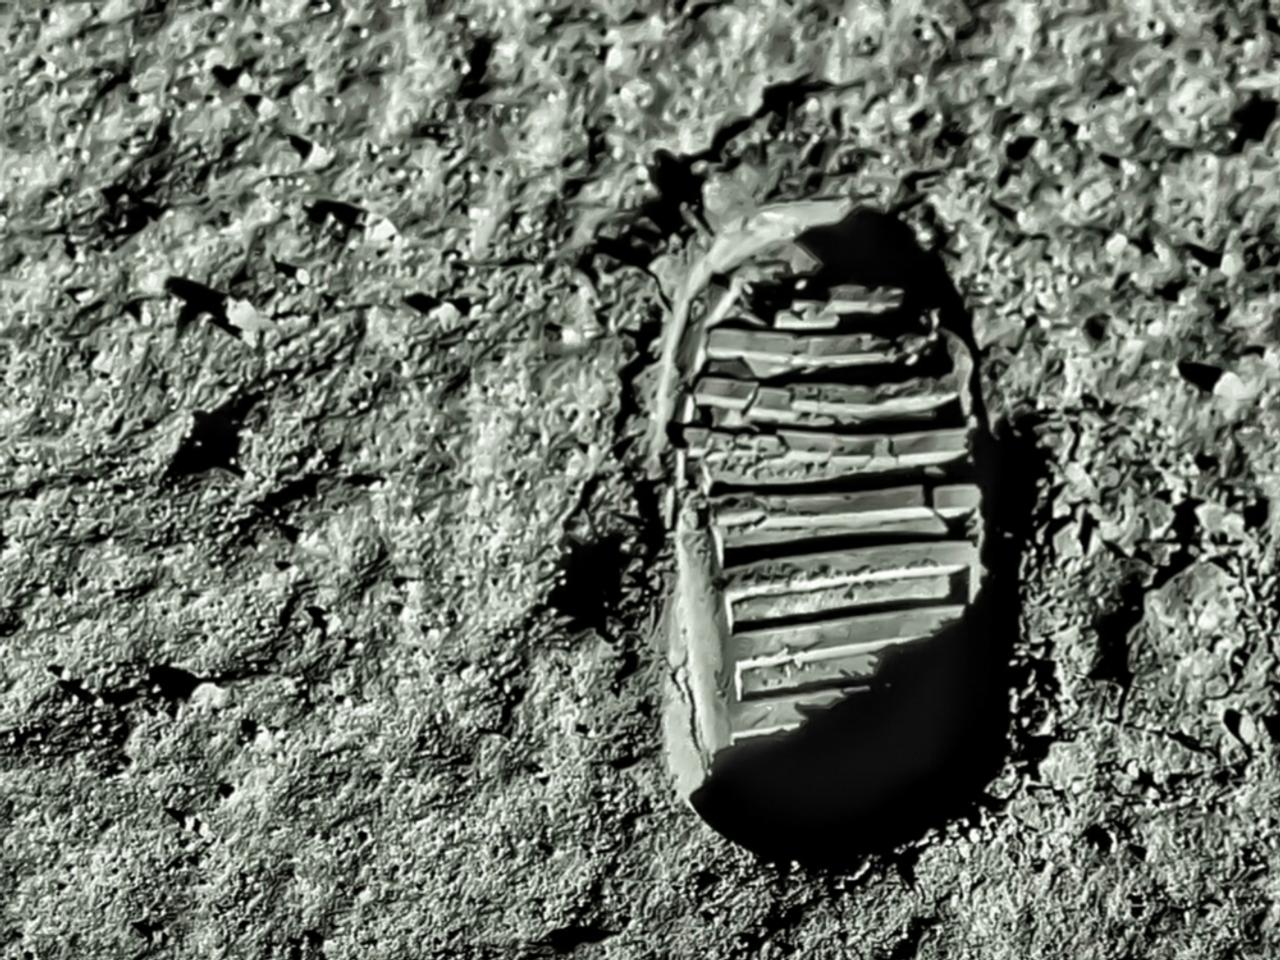 月面歩行した宇宙飛行士たちによる Ufoを見た という証言 嘘発見器をパスしていた ギズモード ジャパン